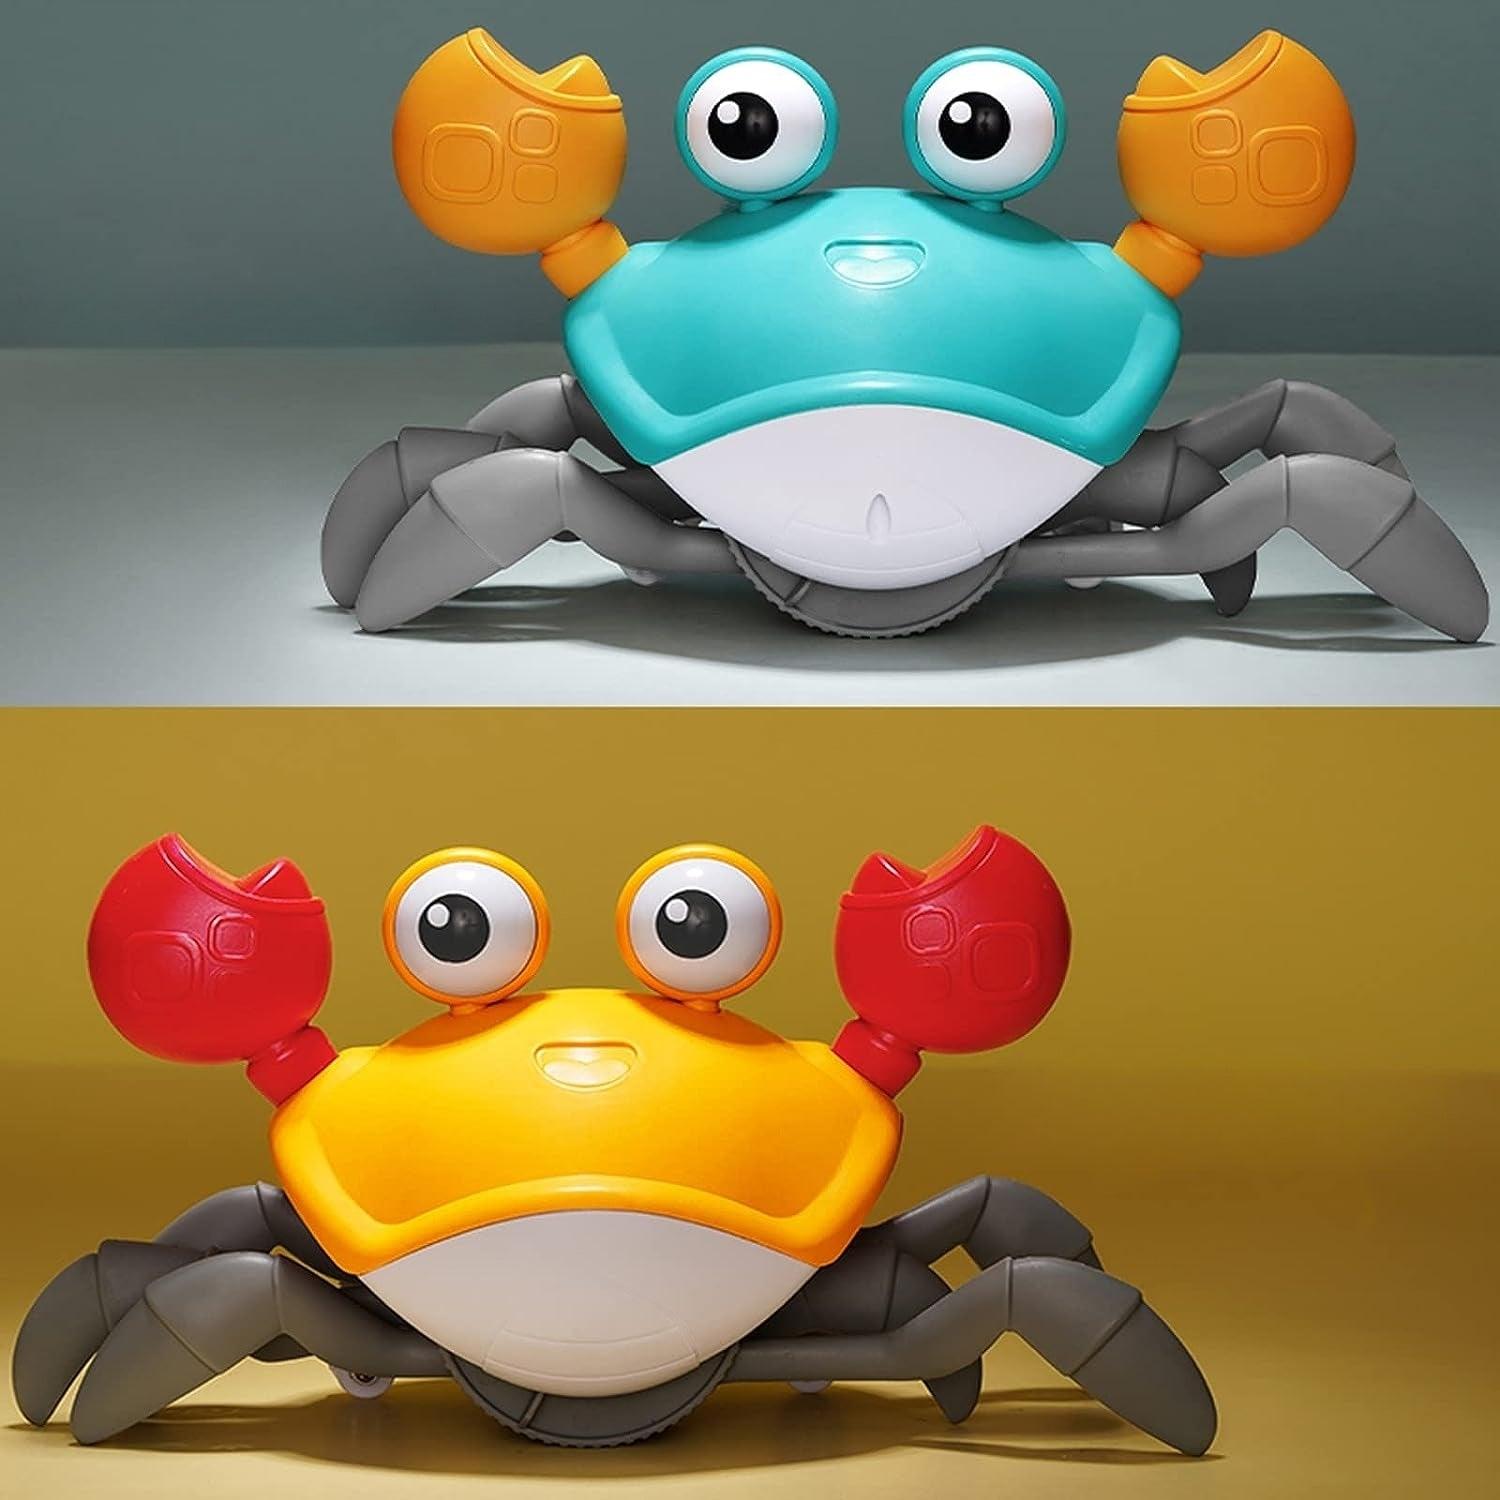 GOTOTOP crabe jouet Modèle réaliste de crabe d'animal marin simulé